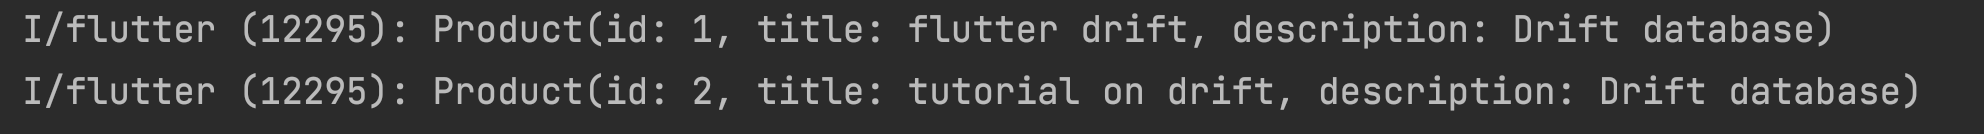 Flutter Drift Database Implementation – AndroidCoding.in